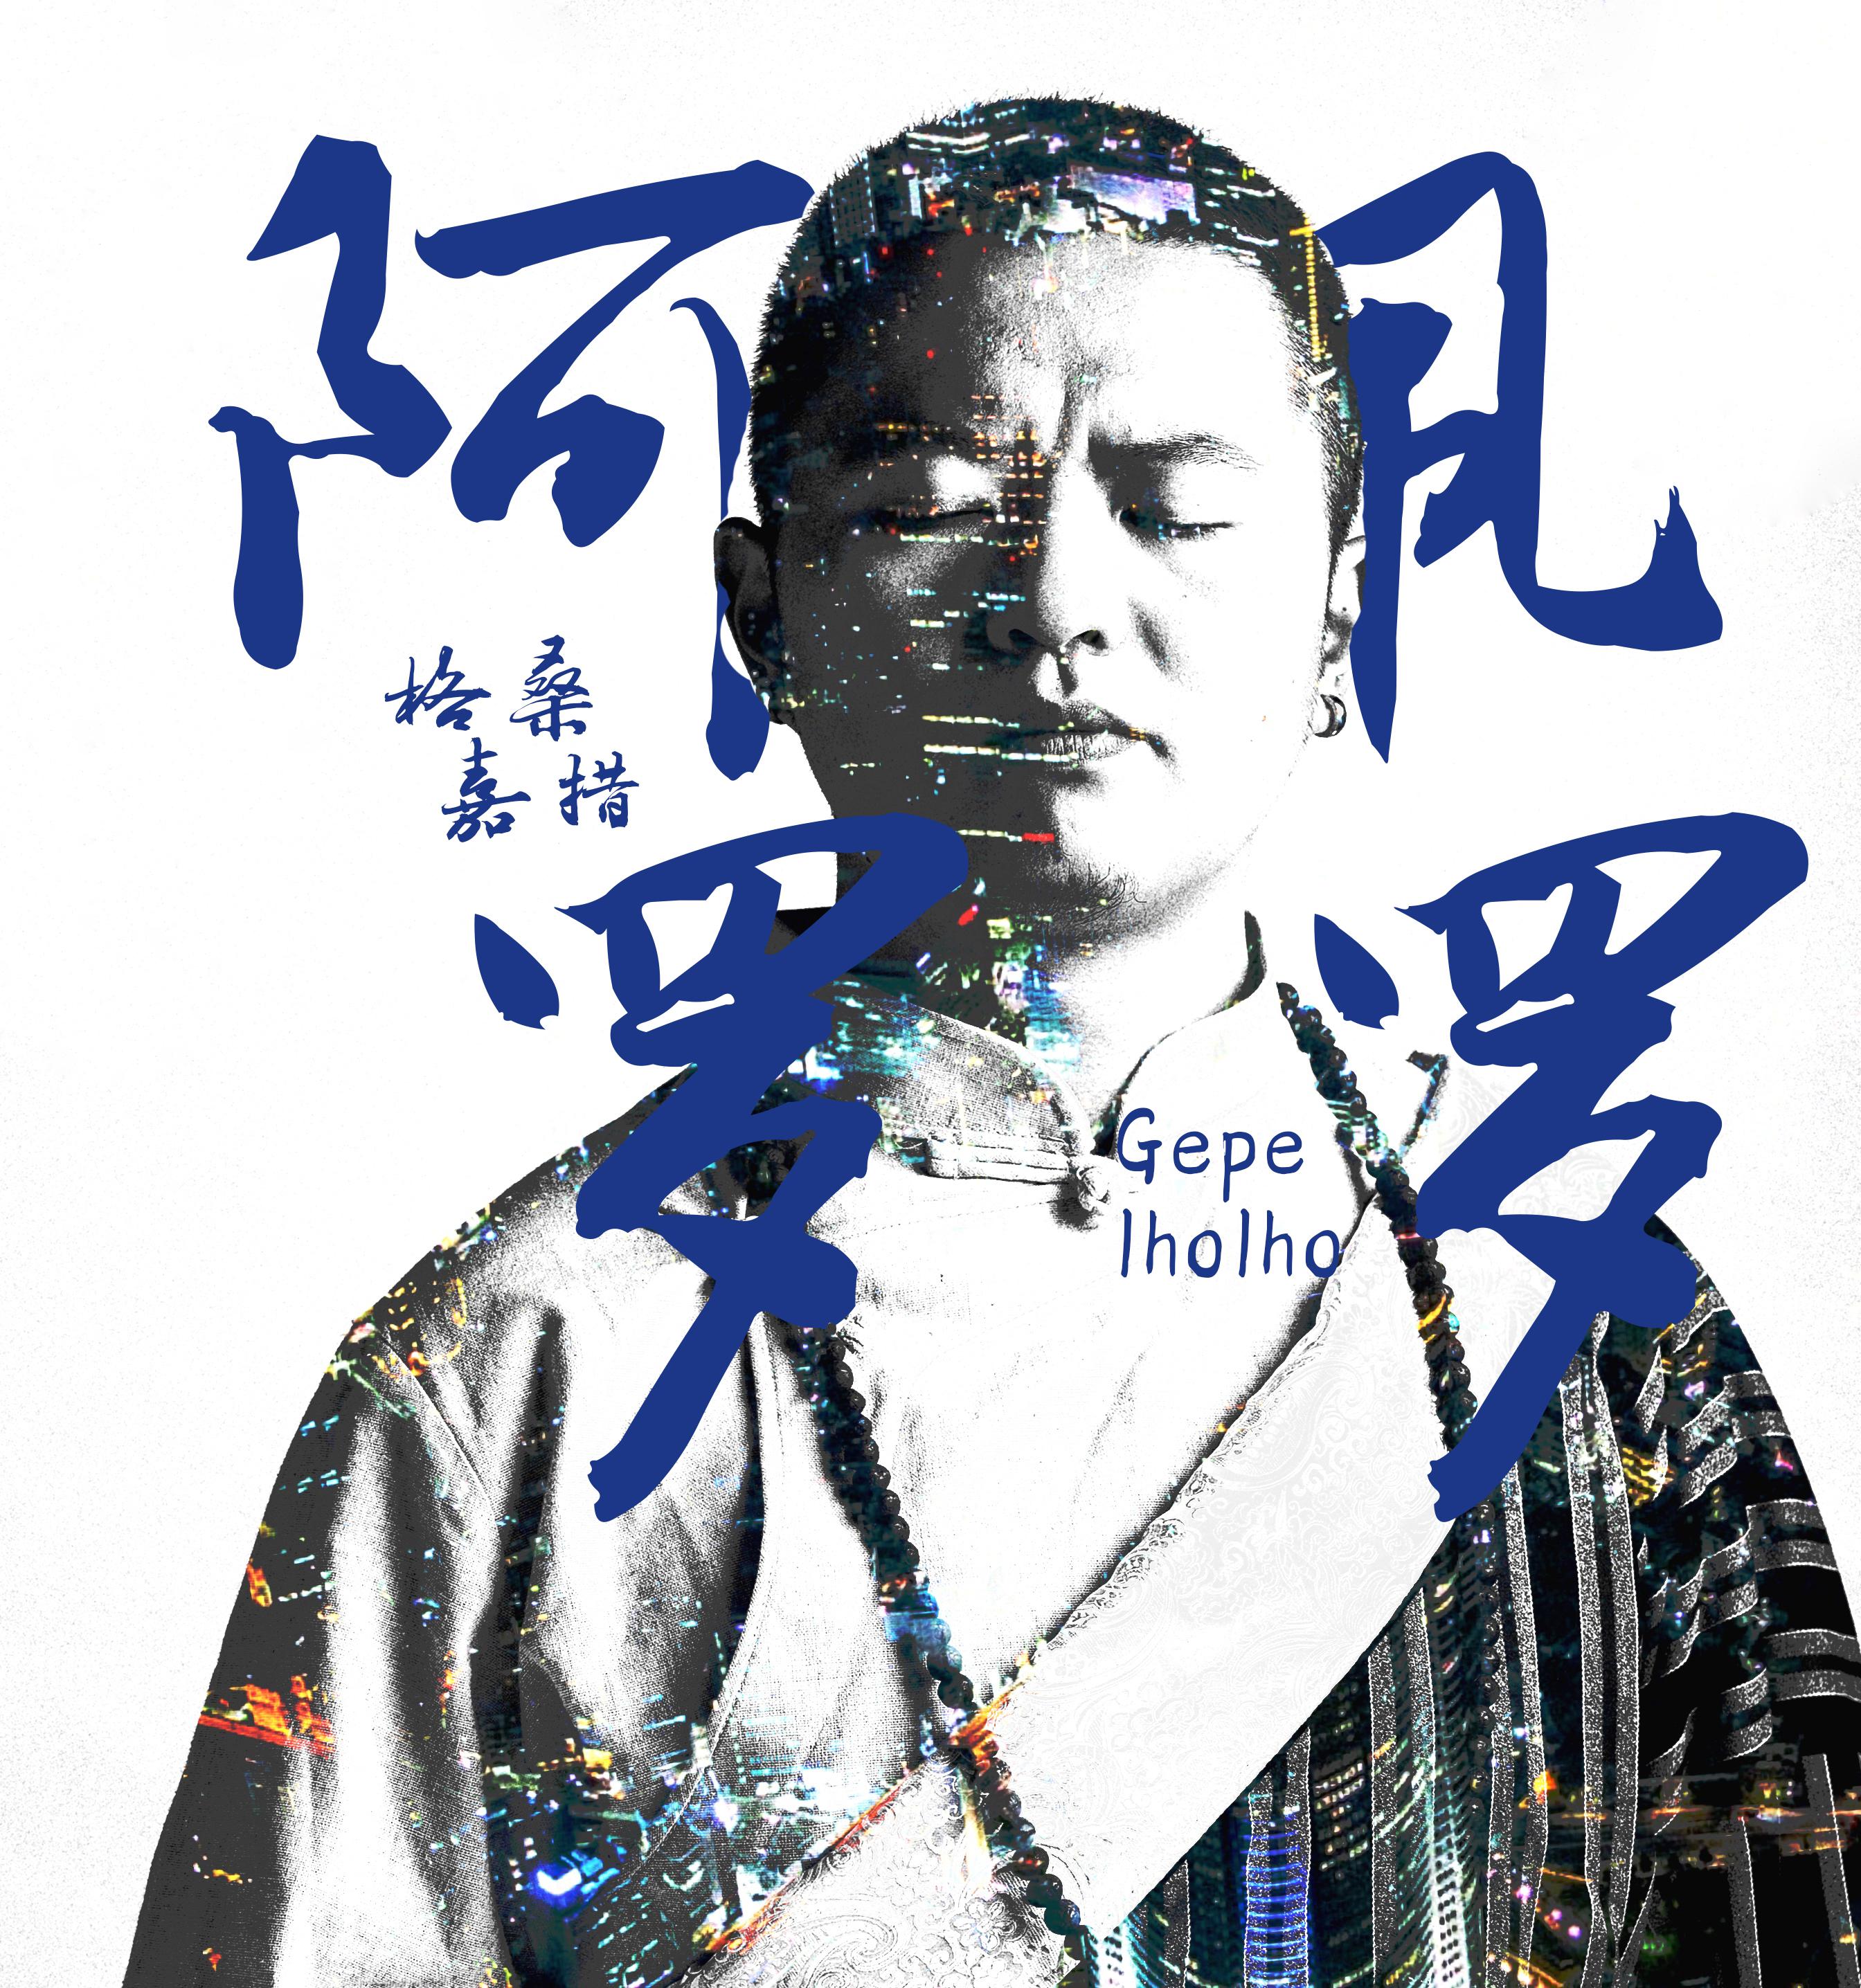 阿佩罗罗(嘉绒藏语) - 格桑嘉措 - 单曲 - 网易云音乐